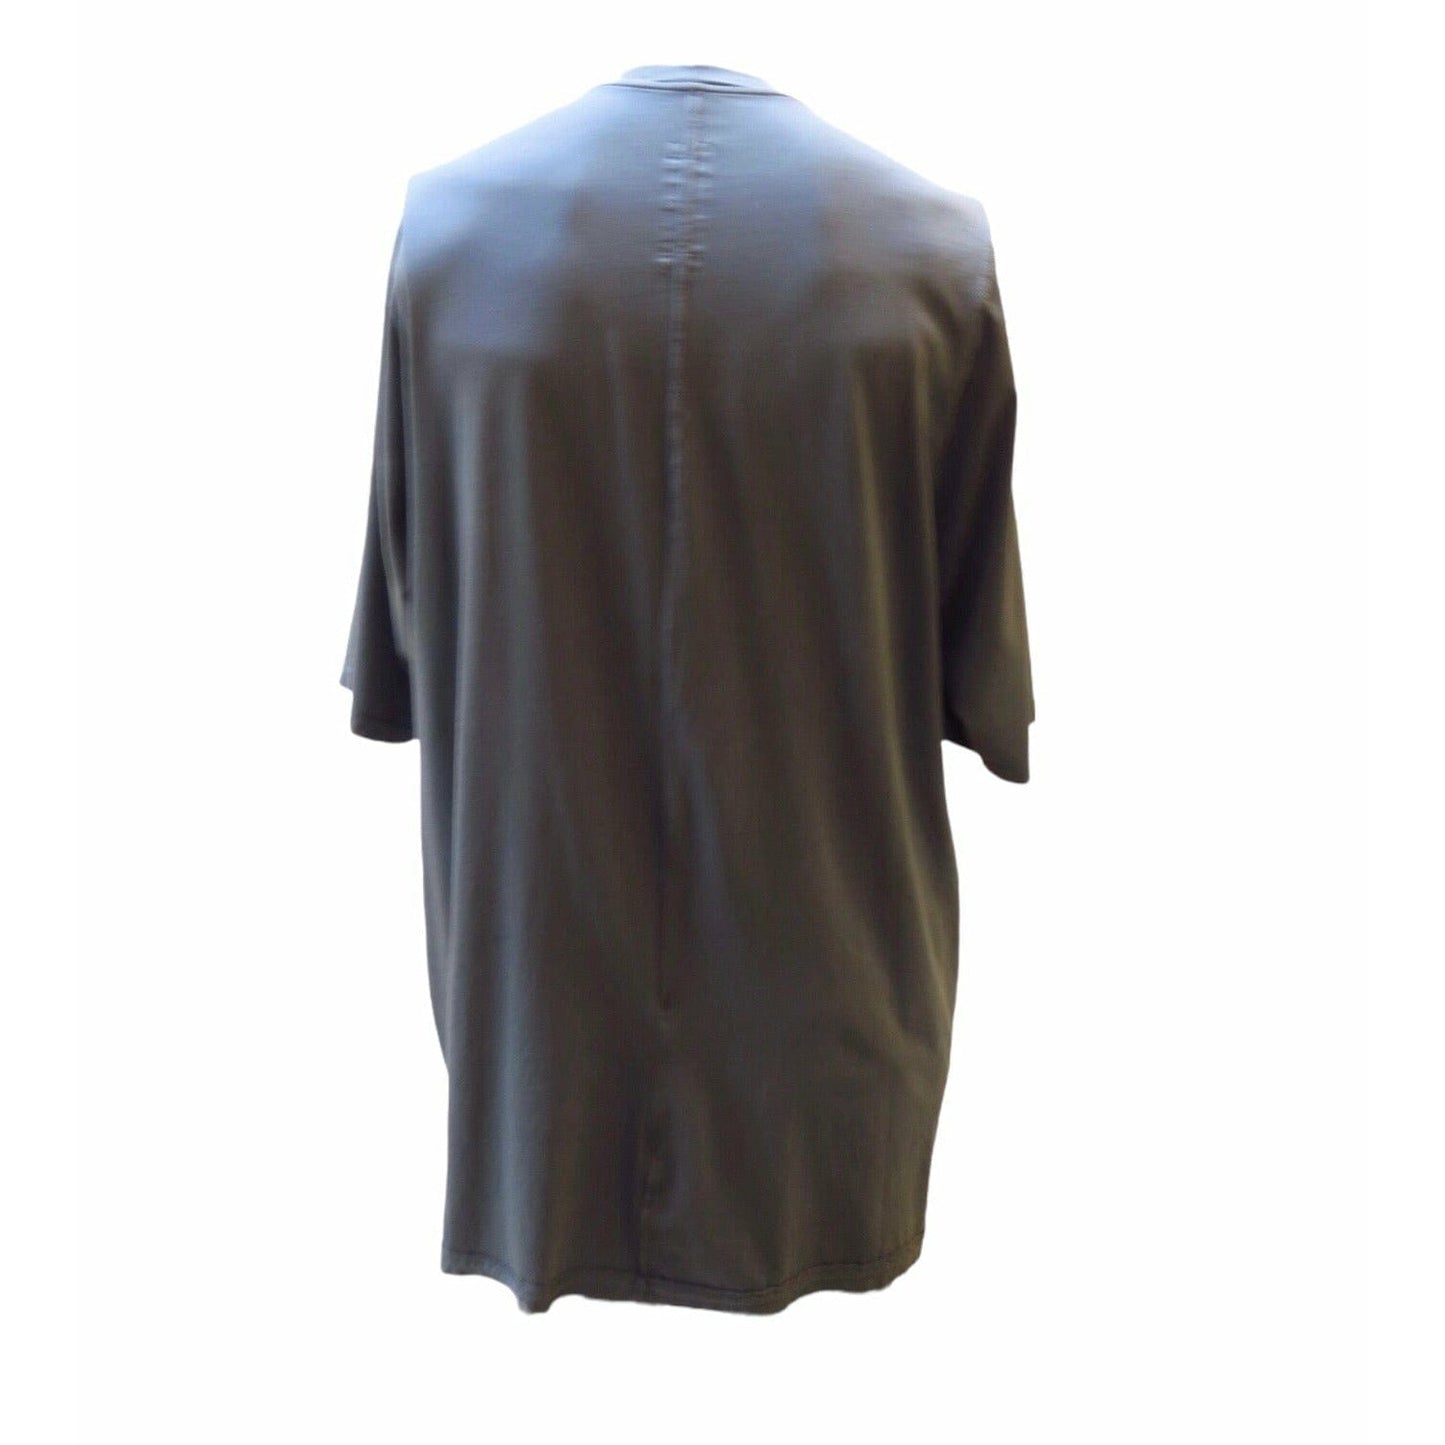 jumbo-printed-t-shirt Men T-Shirt Dark Slate Gray